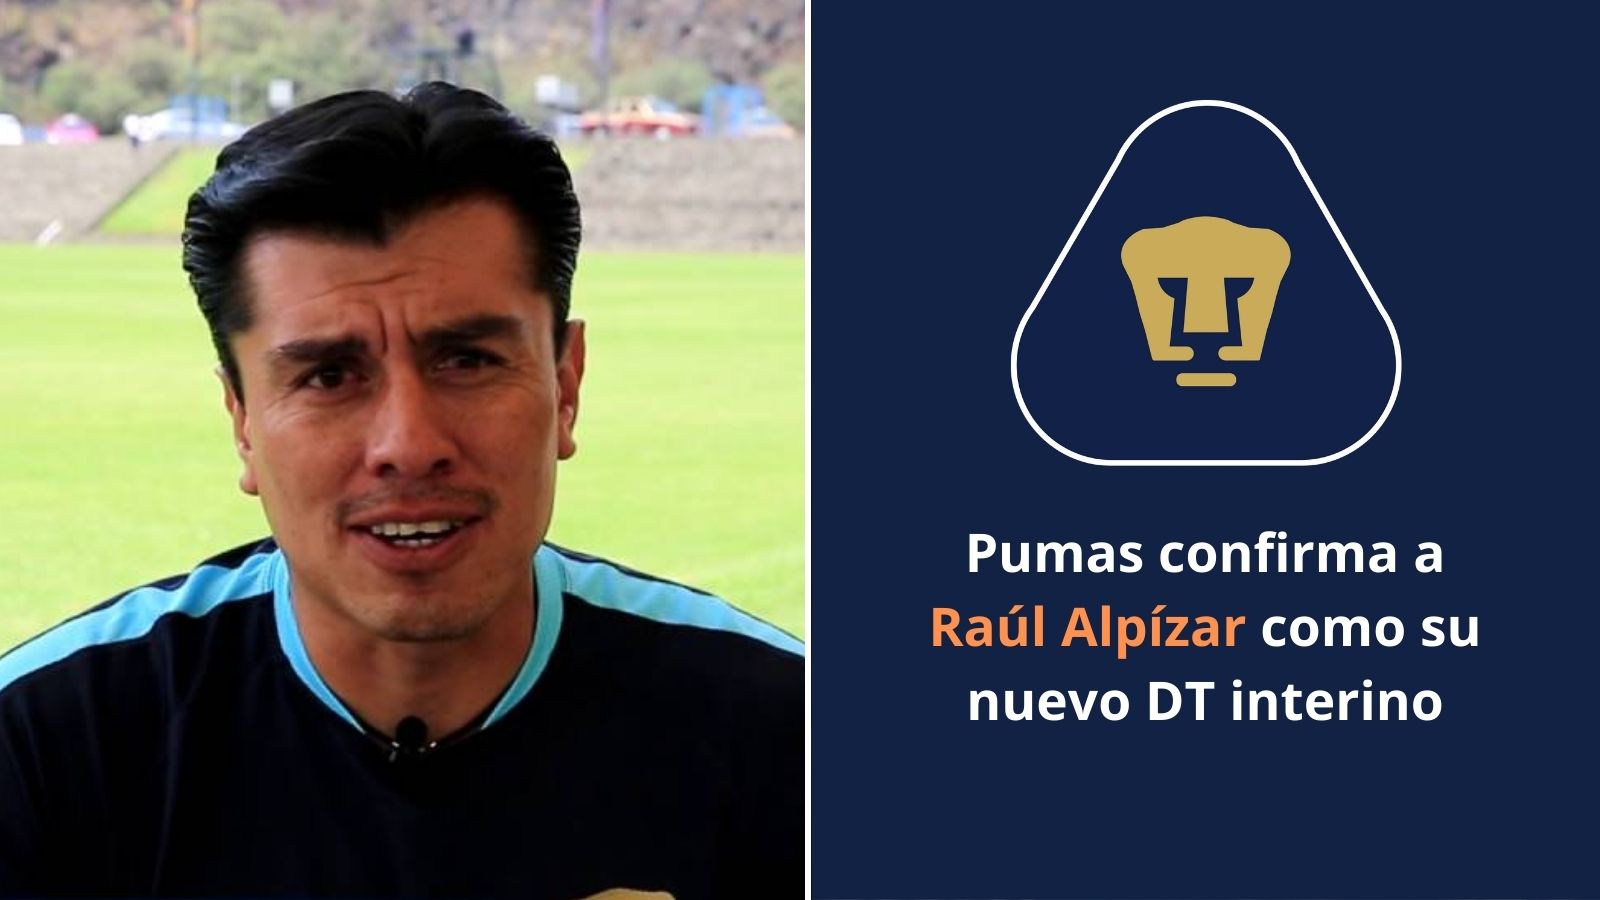 Raúl Alpízar nuevo dt interino de los Pumas